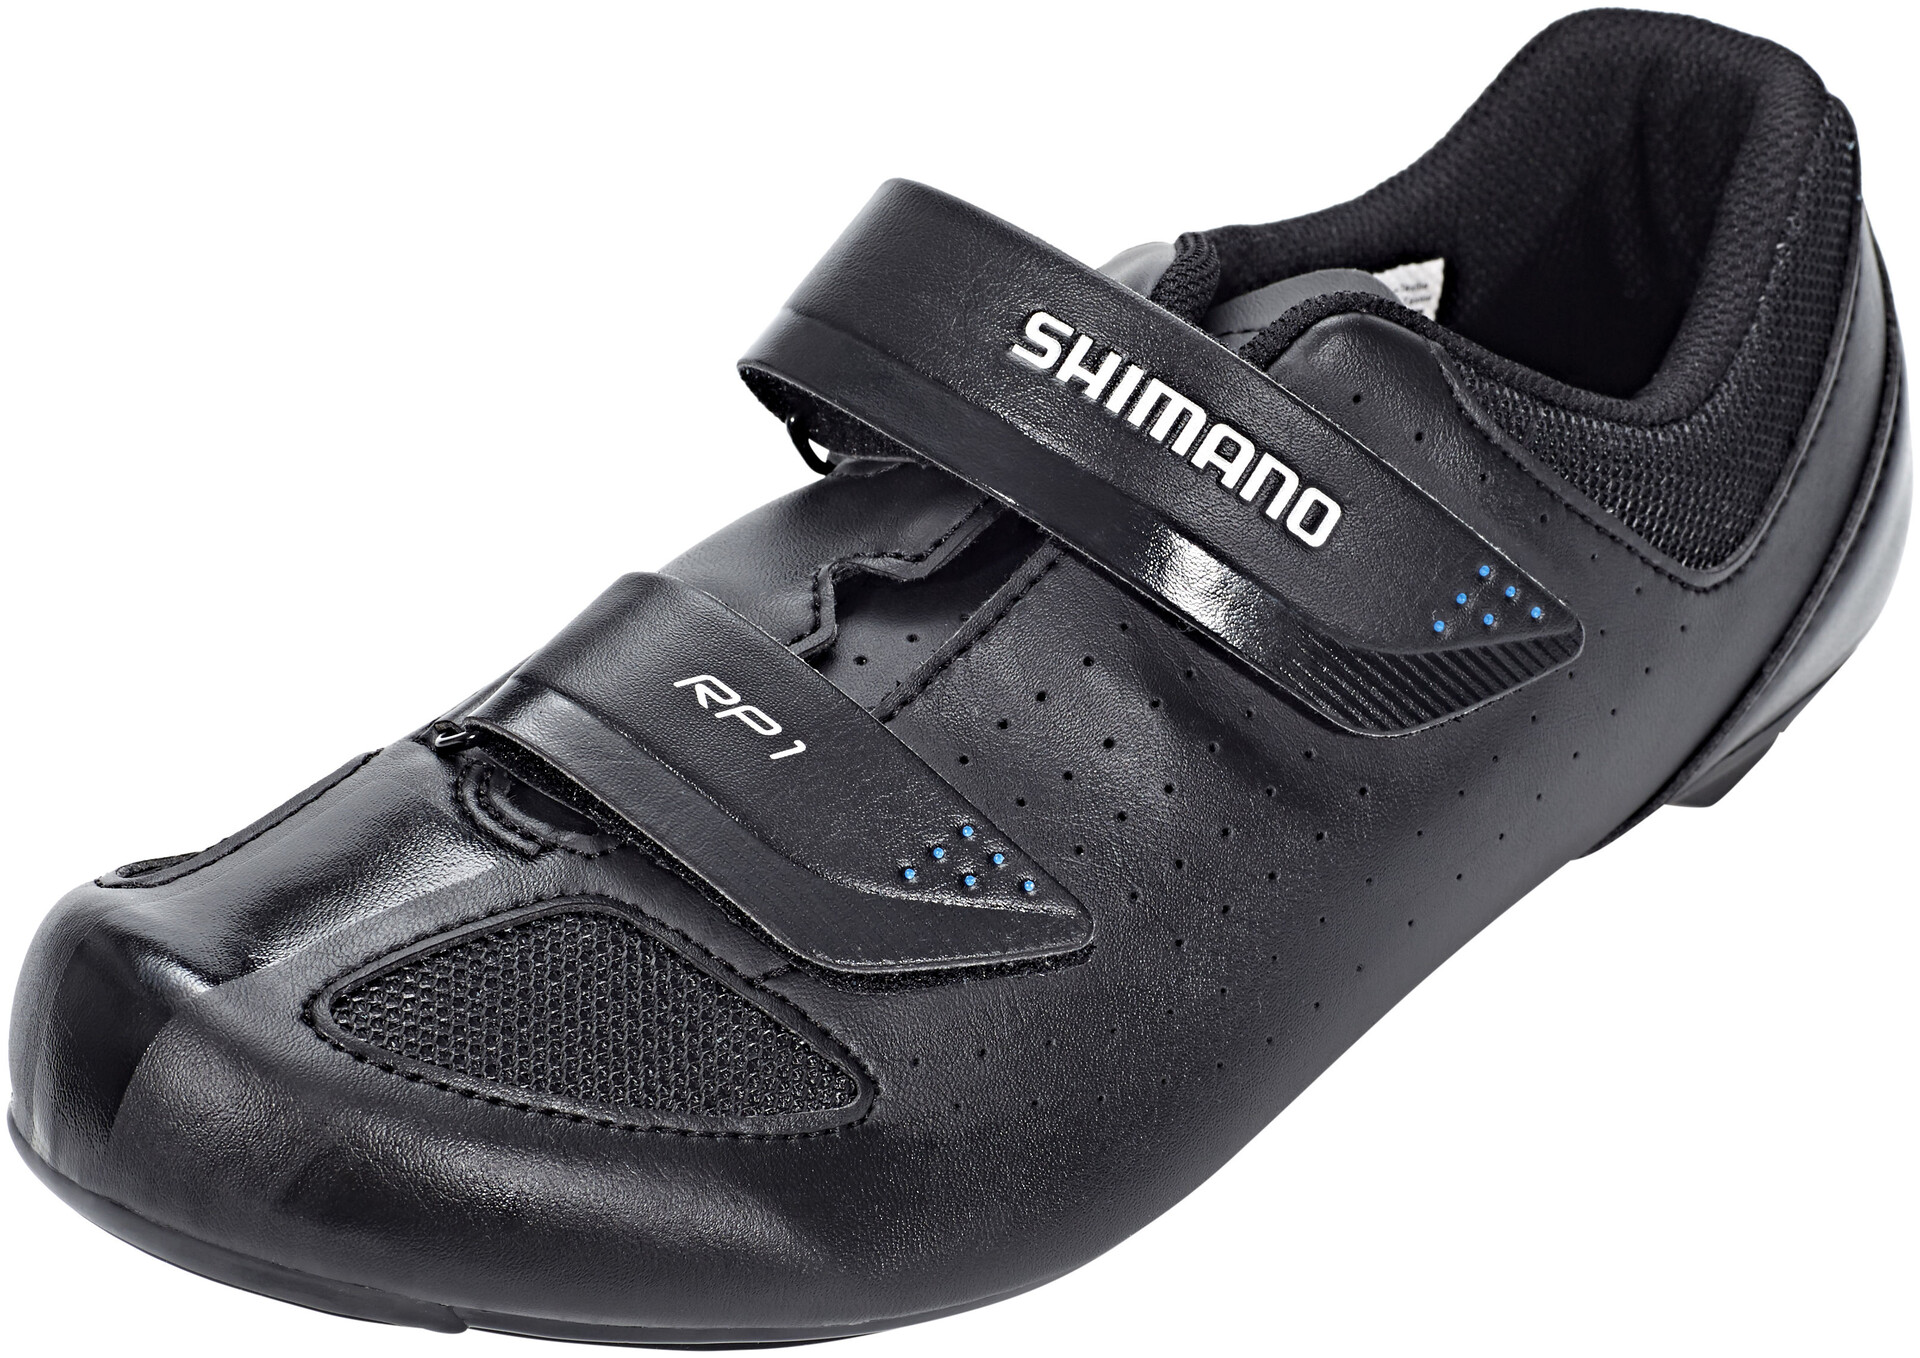 shimano cycling shoes uk